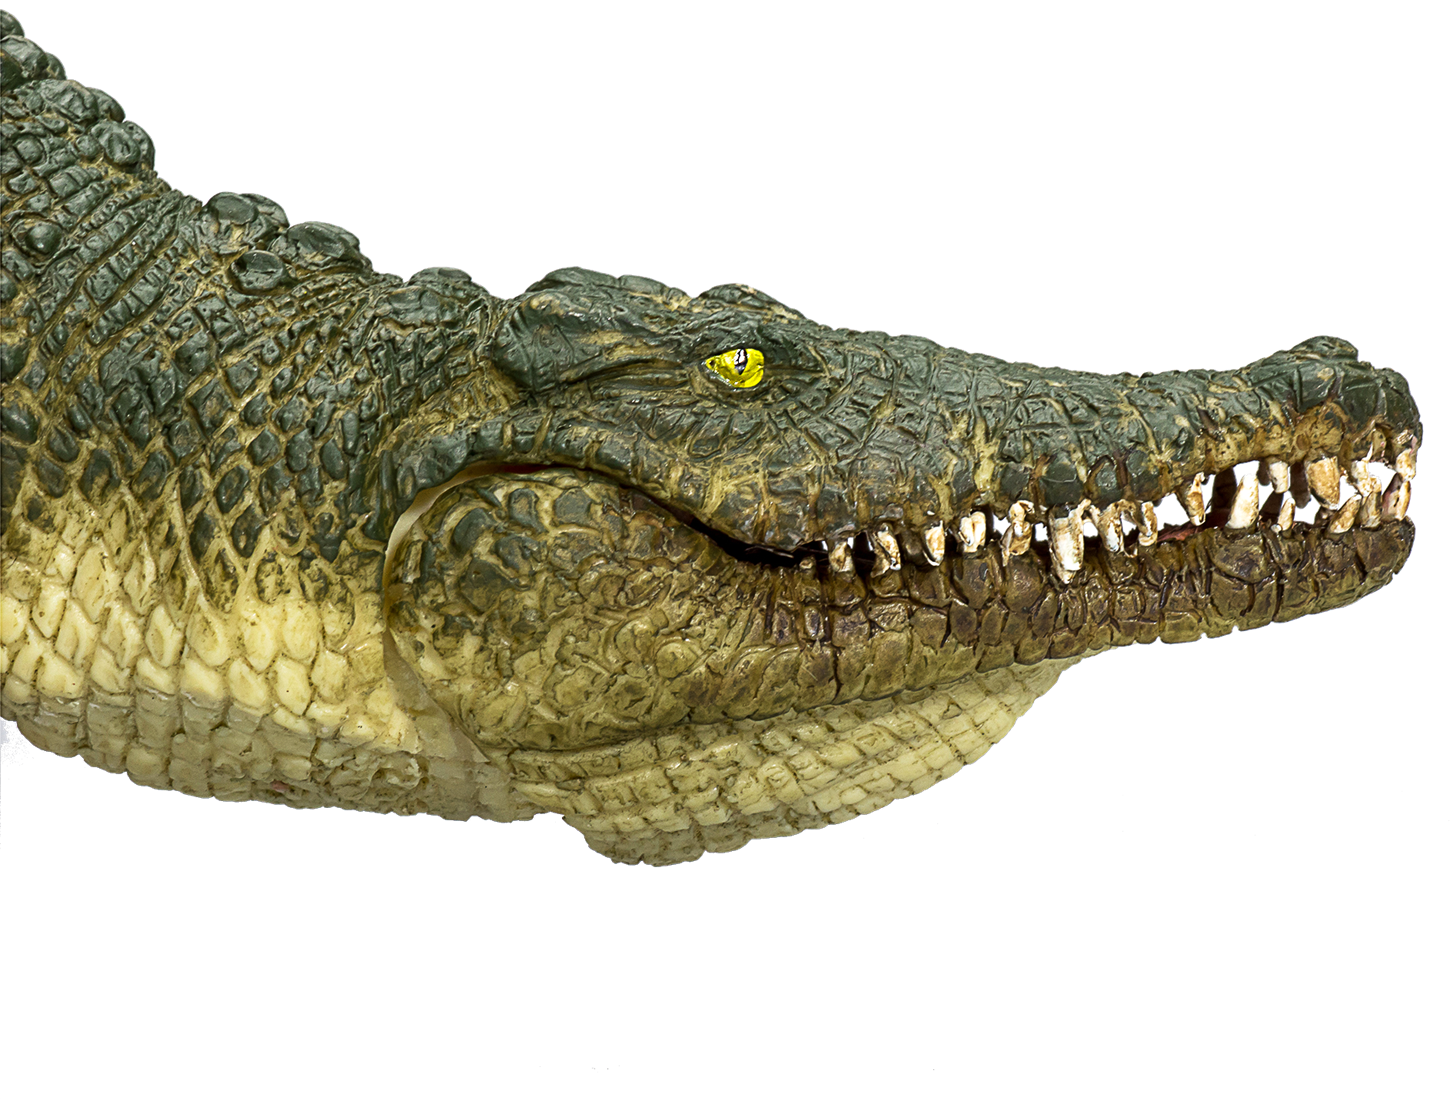 simulé ornement crocodile mâchoire mobile jouet Maroc